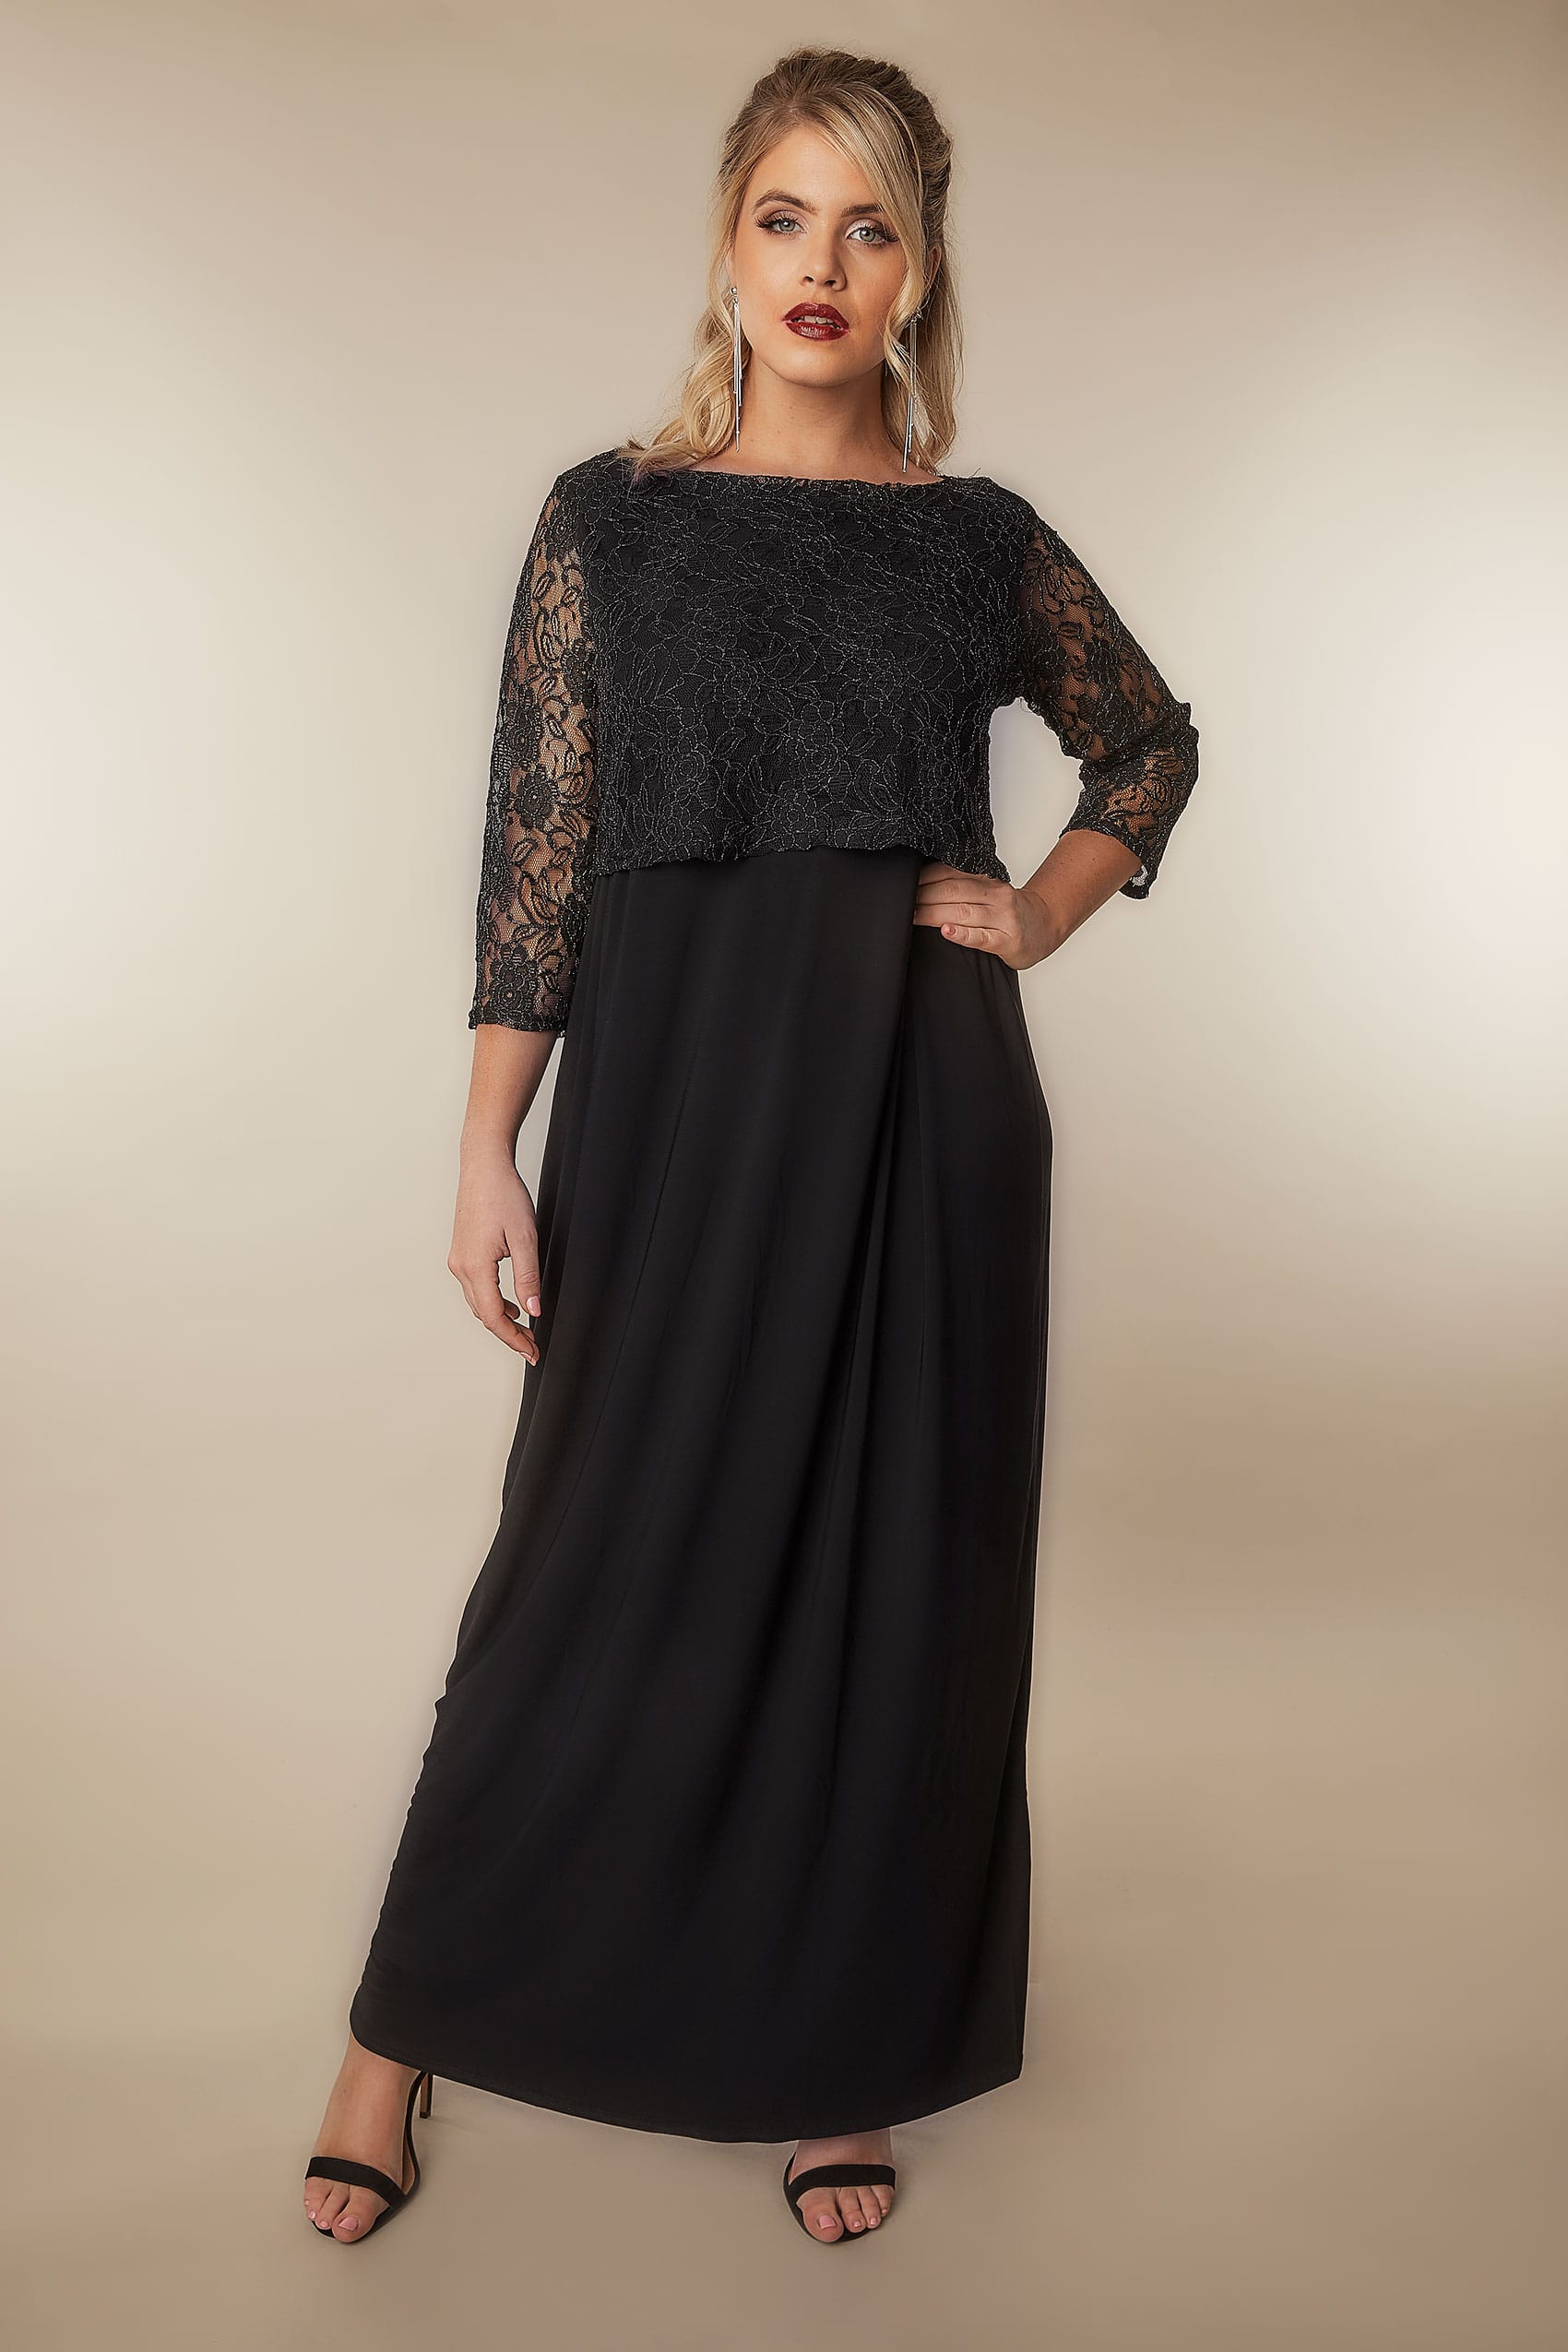 mizaniprintdesign: Express Long Sleeve Black Maxi Dress